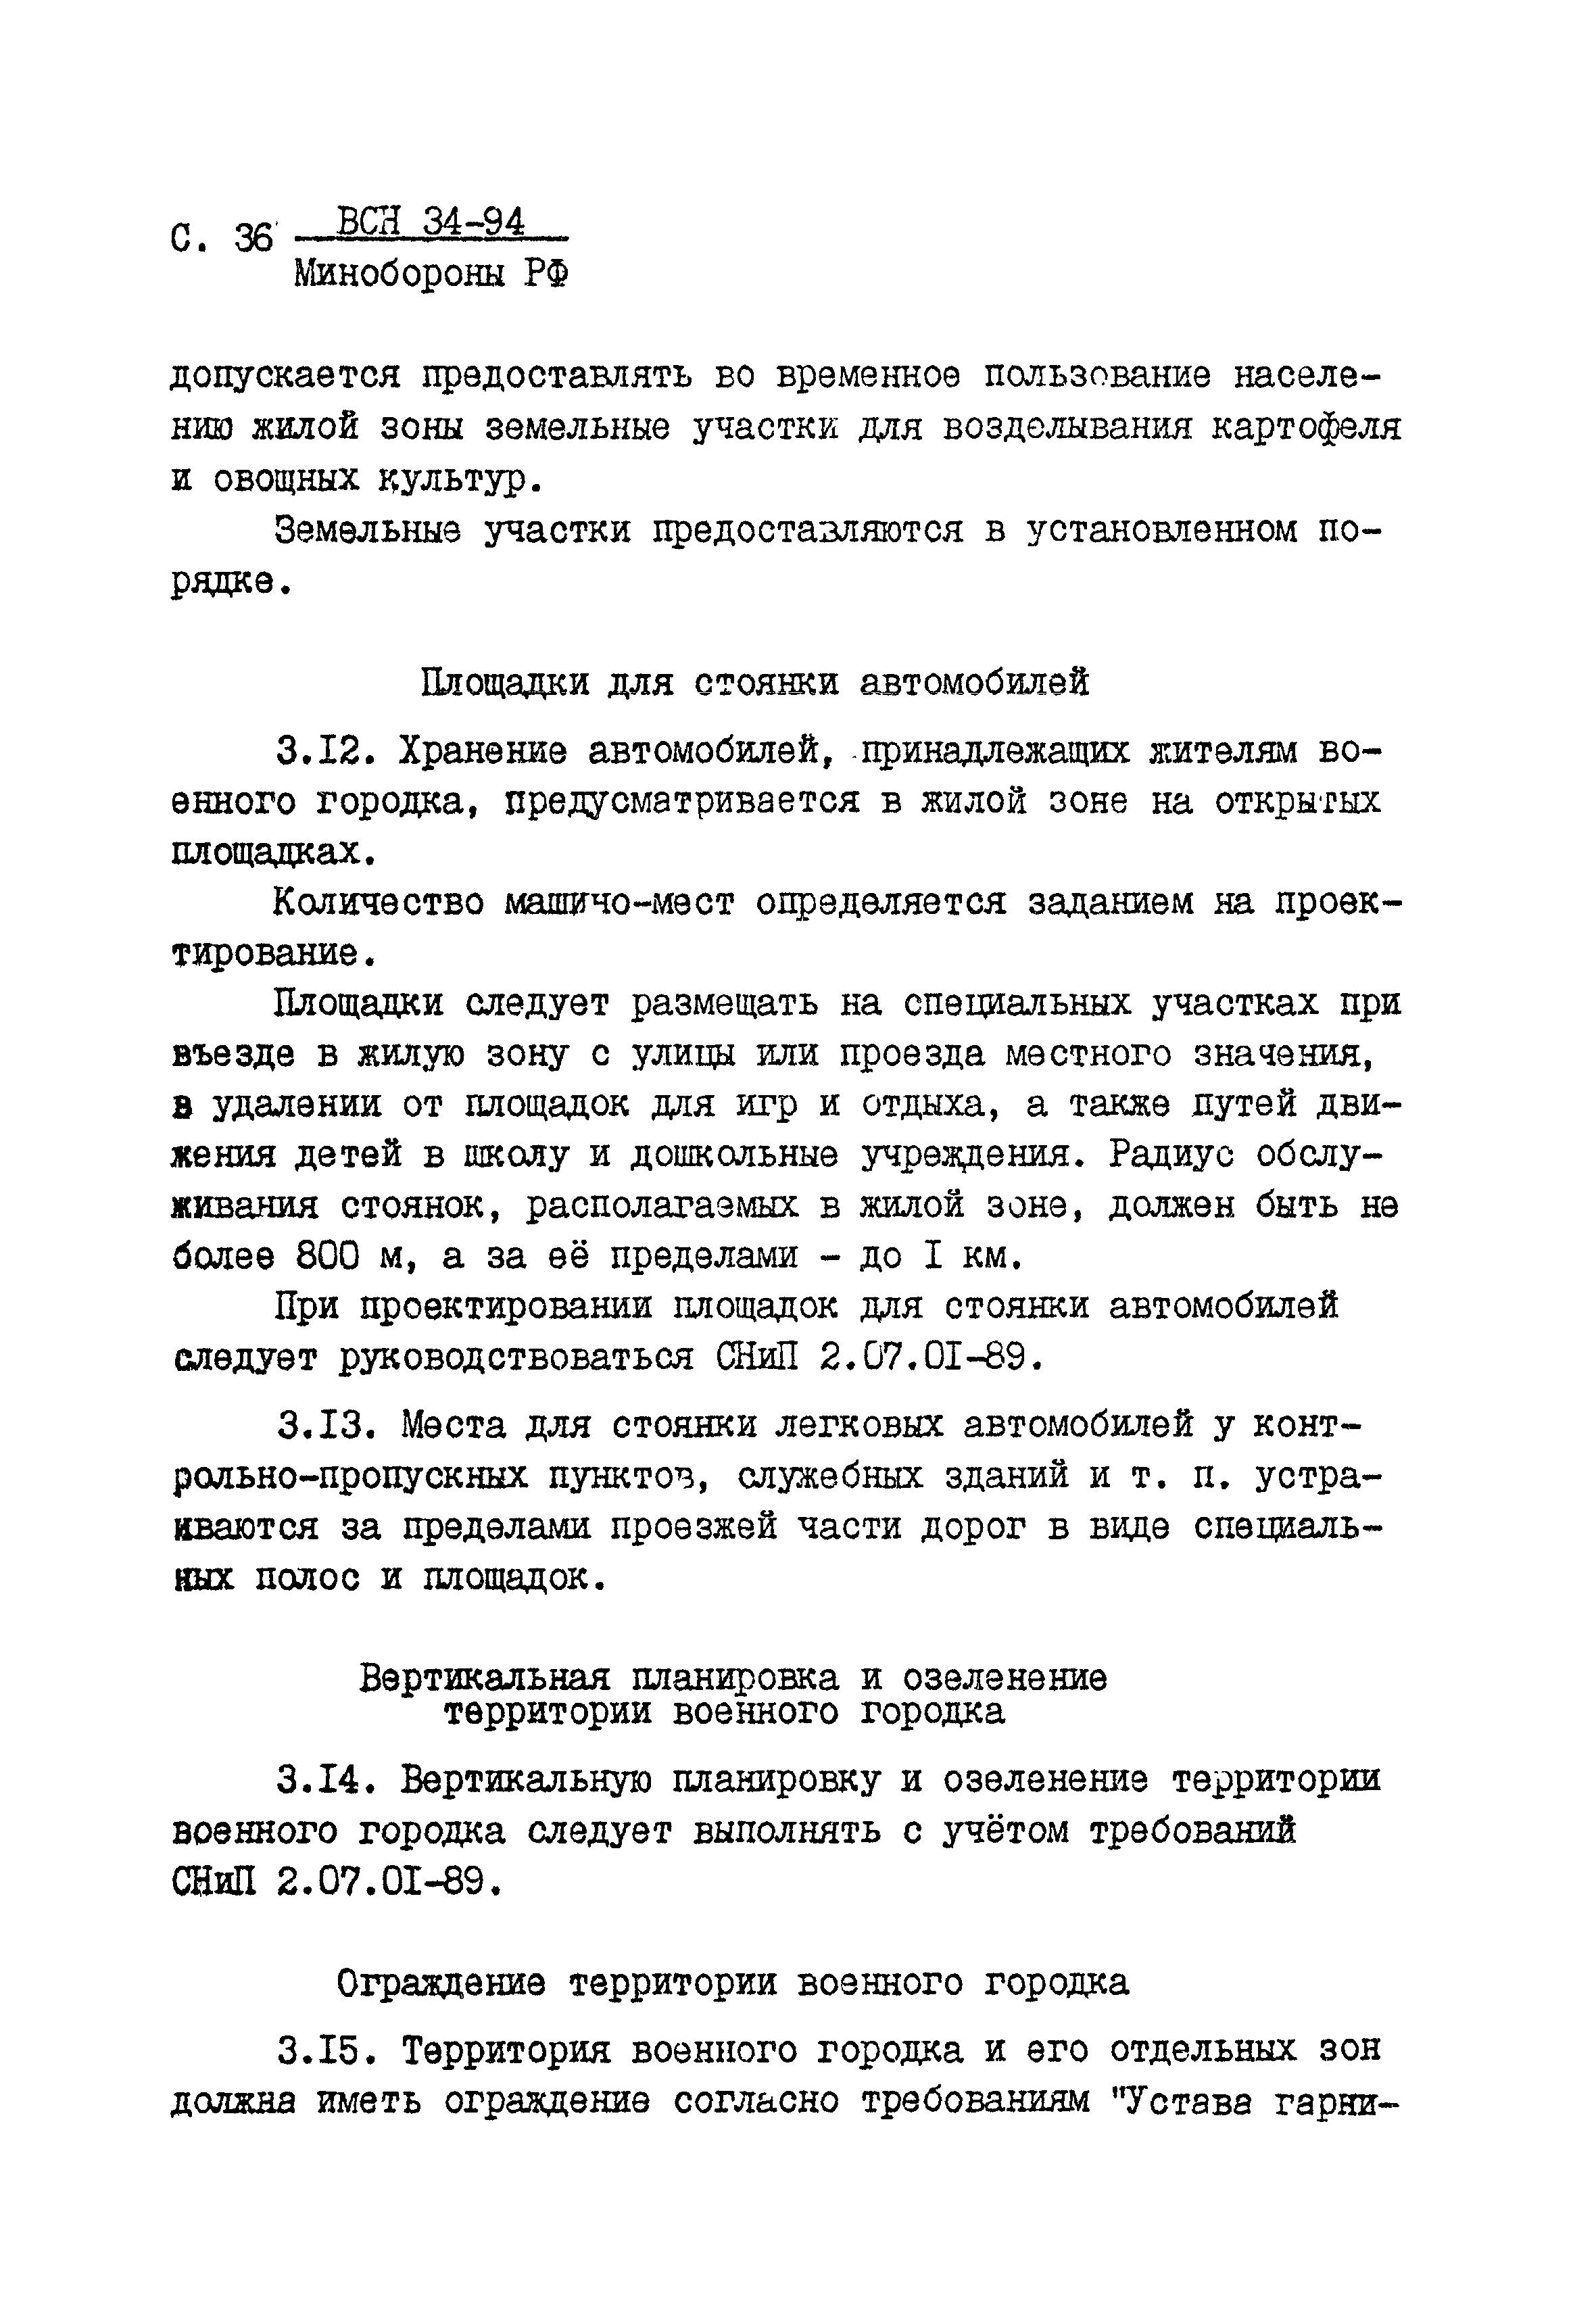 ВСН 34-94 МО РФ